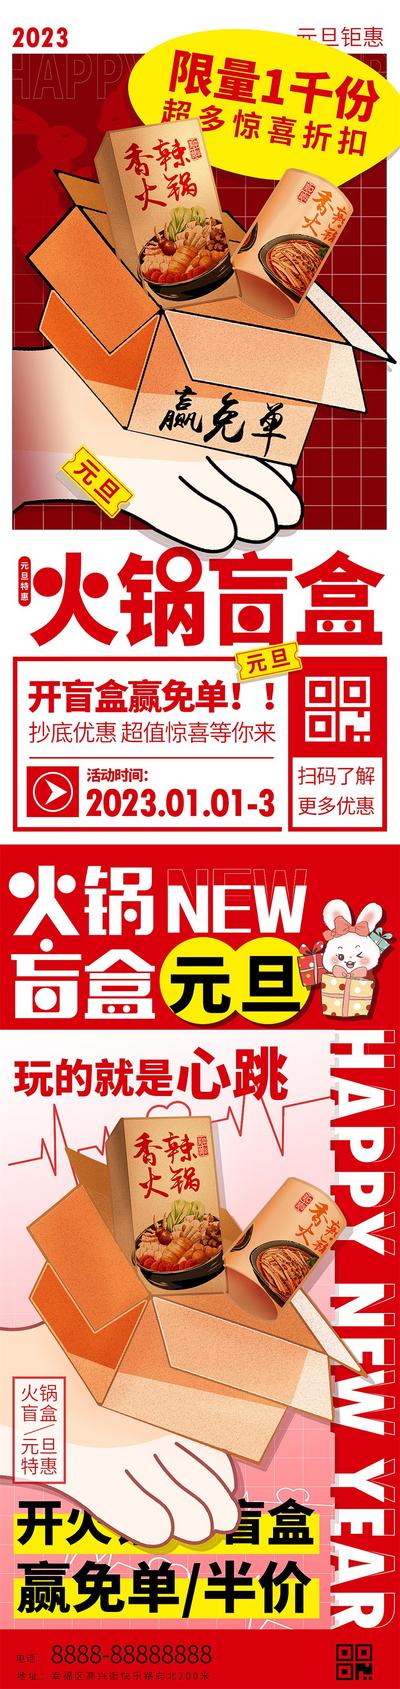 南门网 海报 促销 系列 美食 公历节日 元旦 新年 火锅 盲盒 餐饮